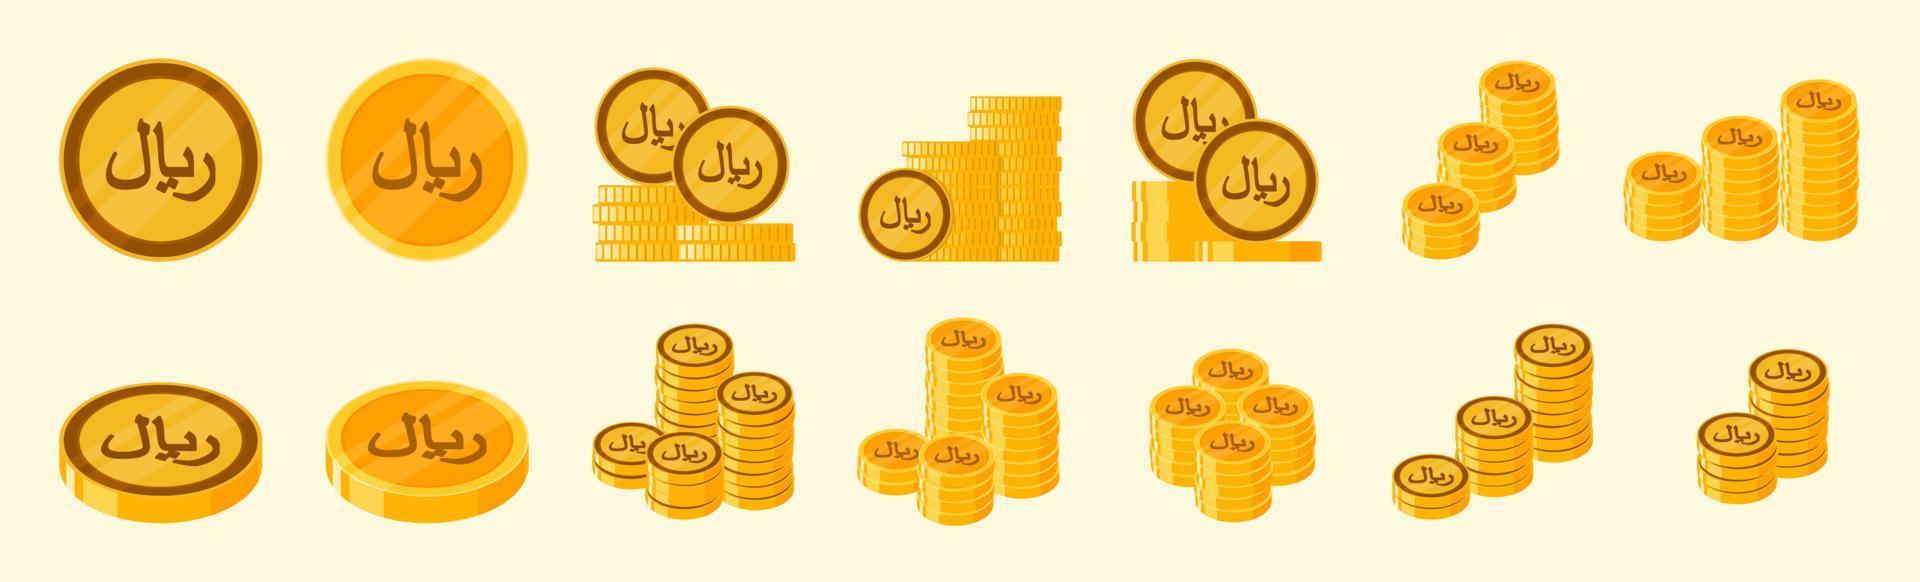 jeu d'icônes de pièce de monnaie riyal saoudien vecteur